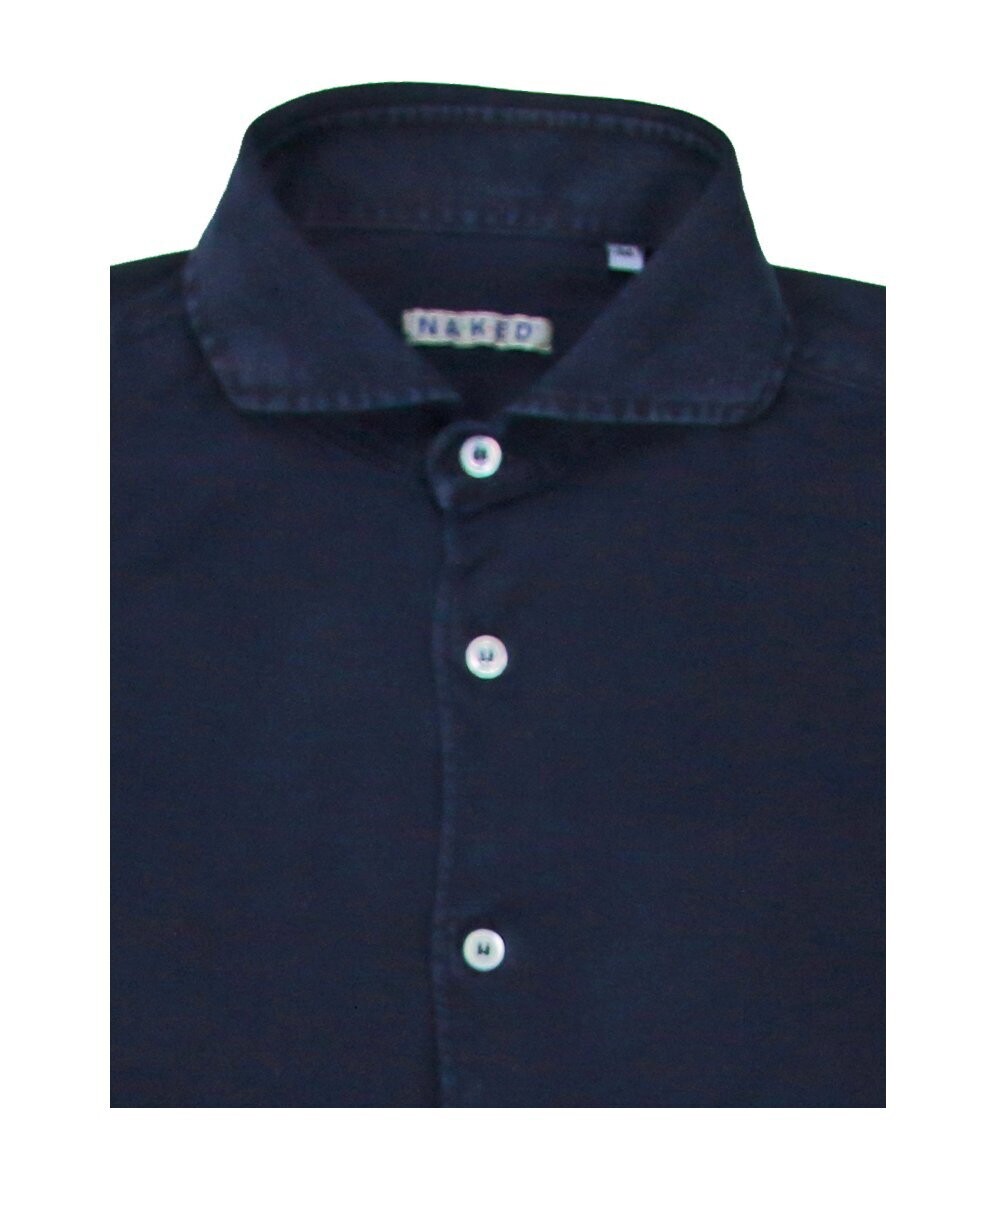 Sublime jersey cotton /cashmere Shirt